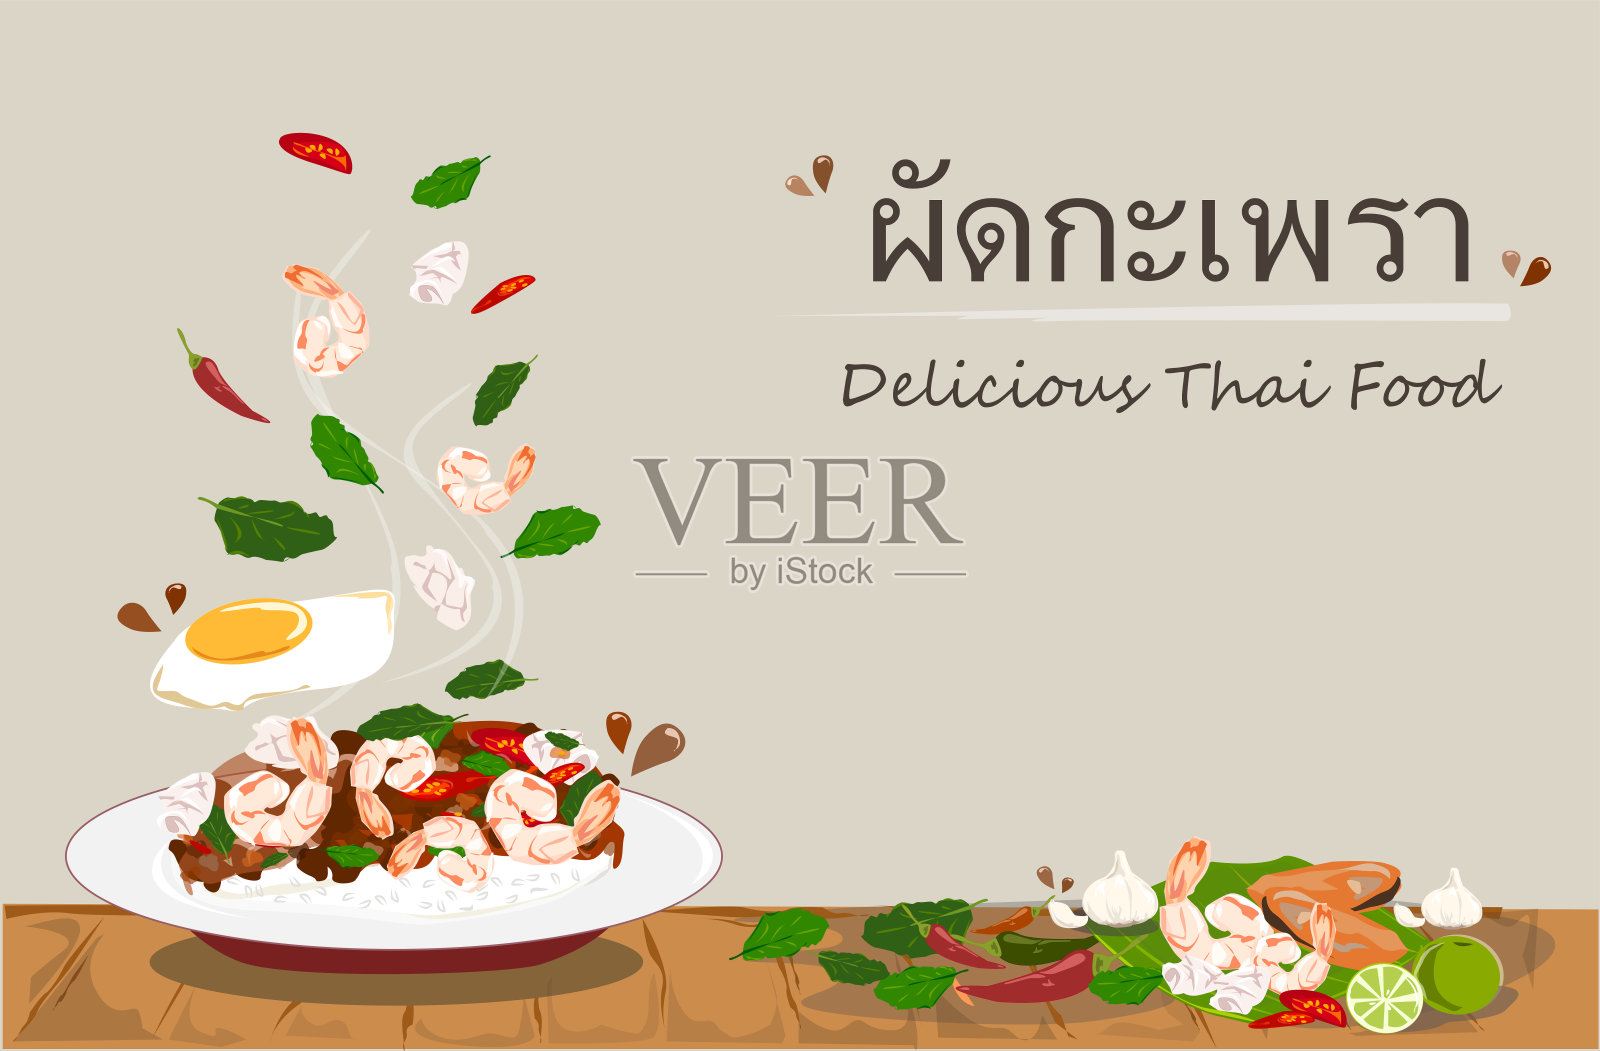 辛辣的泰式罗勒配海鲜和鸡蛋是非常美味的泰国食物。米饭配炒海鲜和罗勒叶。泰国的街头小吃。插画图片素材